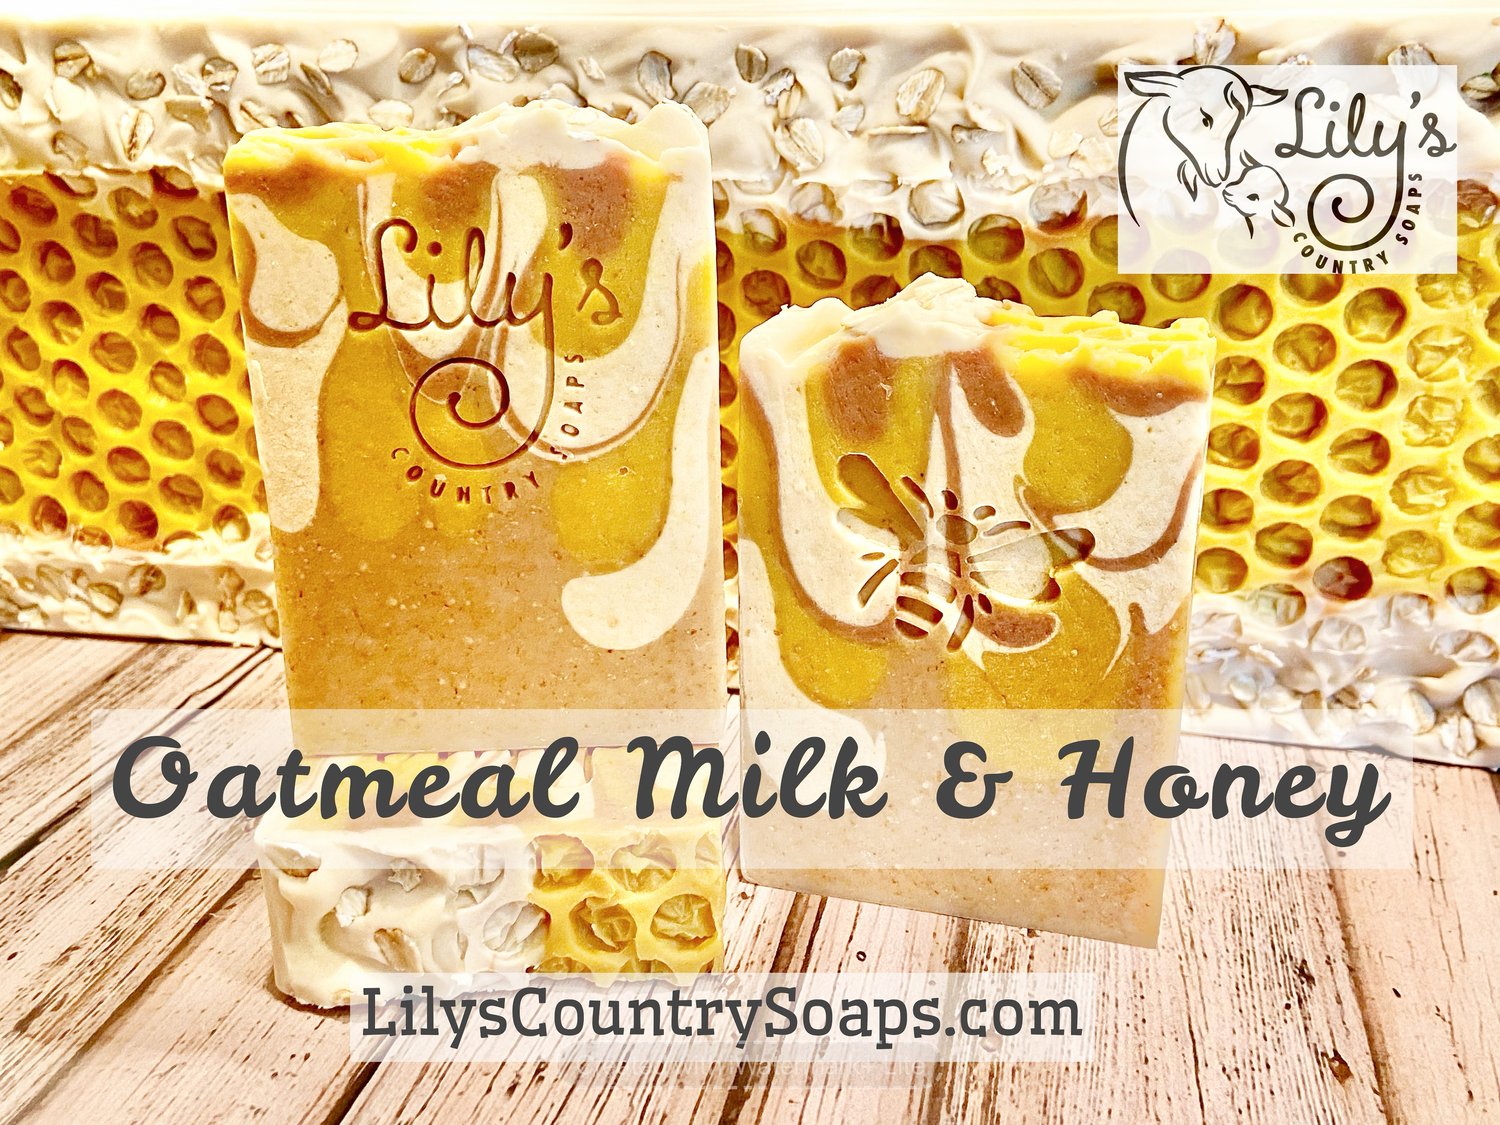 Oatmeal Milk & Honey Goat Milk Soap – Goat Milk Stuff